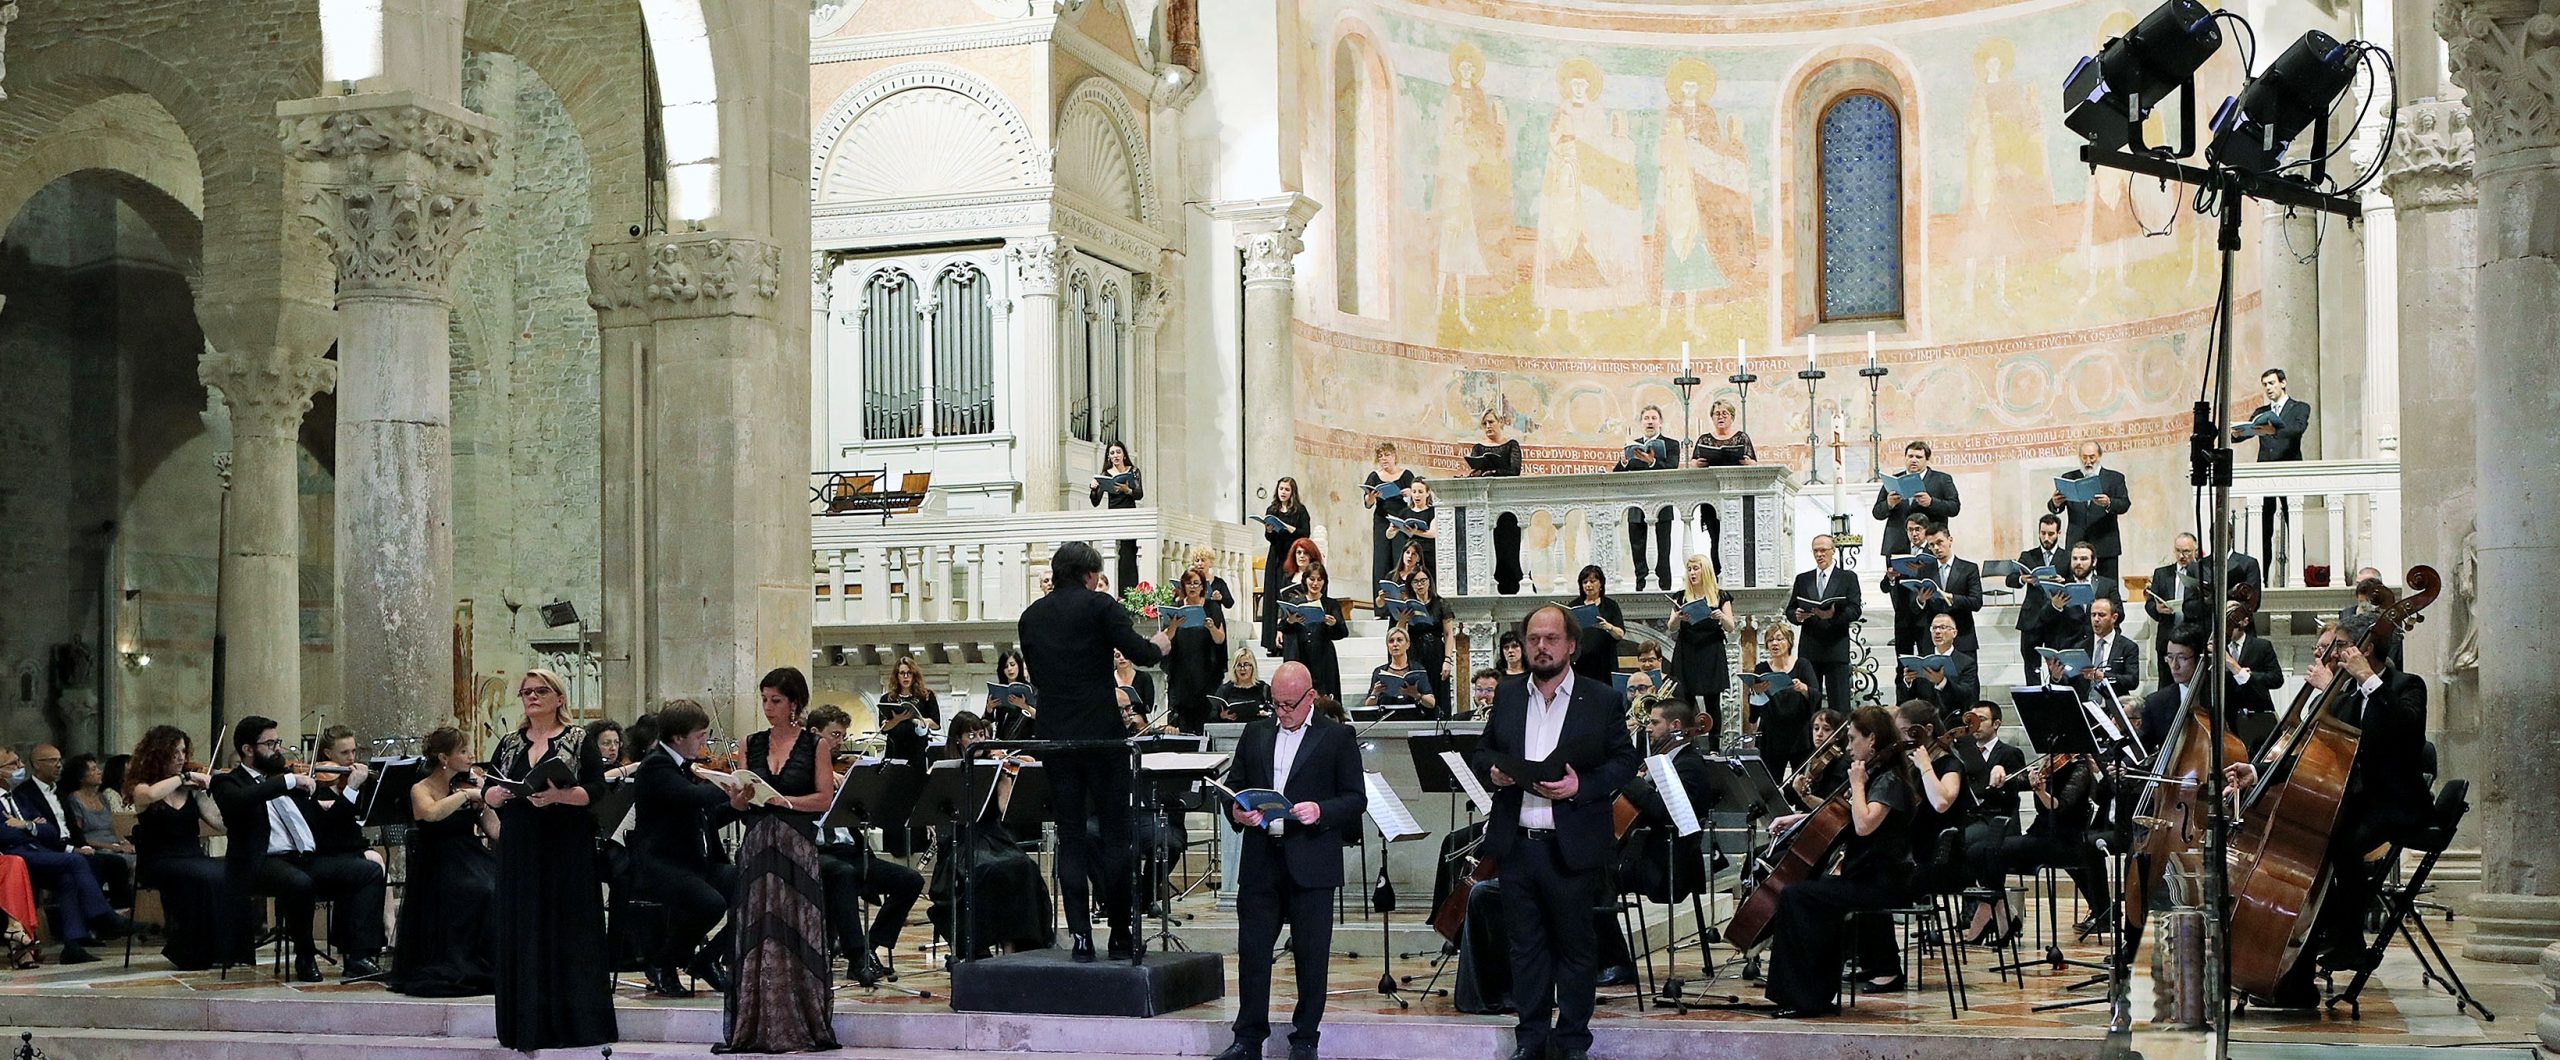 Al momento stai visualizzando Orchestra e Coro del FVG applauditi al Concerto della Rinascita ad Aquileia. Prossimo concerto Orchestra FVG il 25 luglio a Palmanova